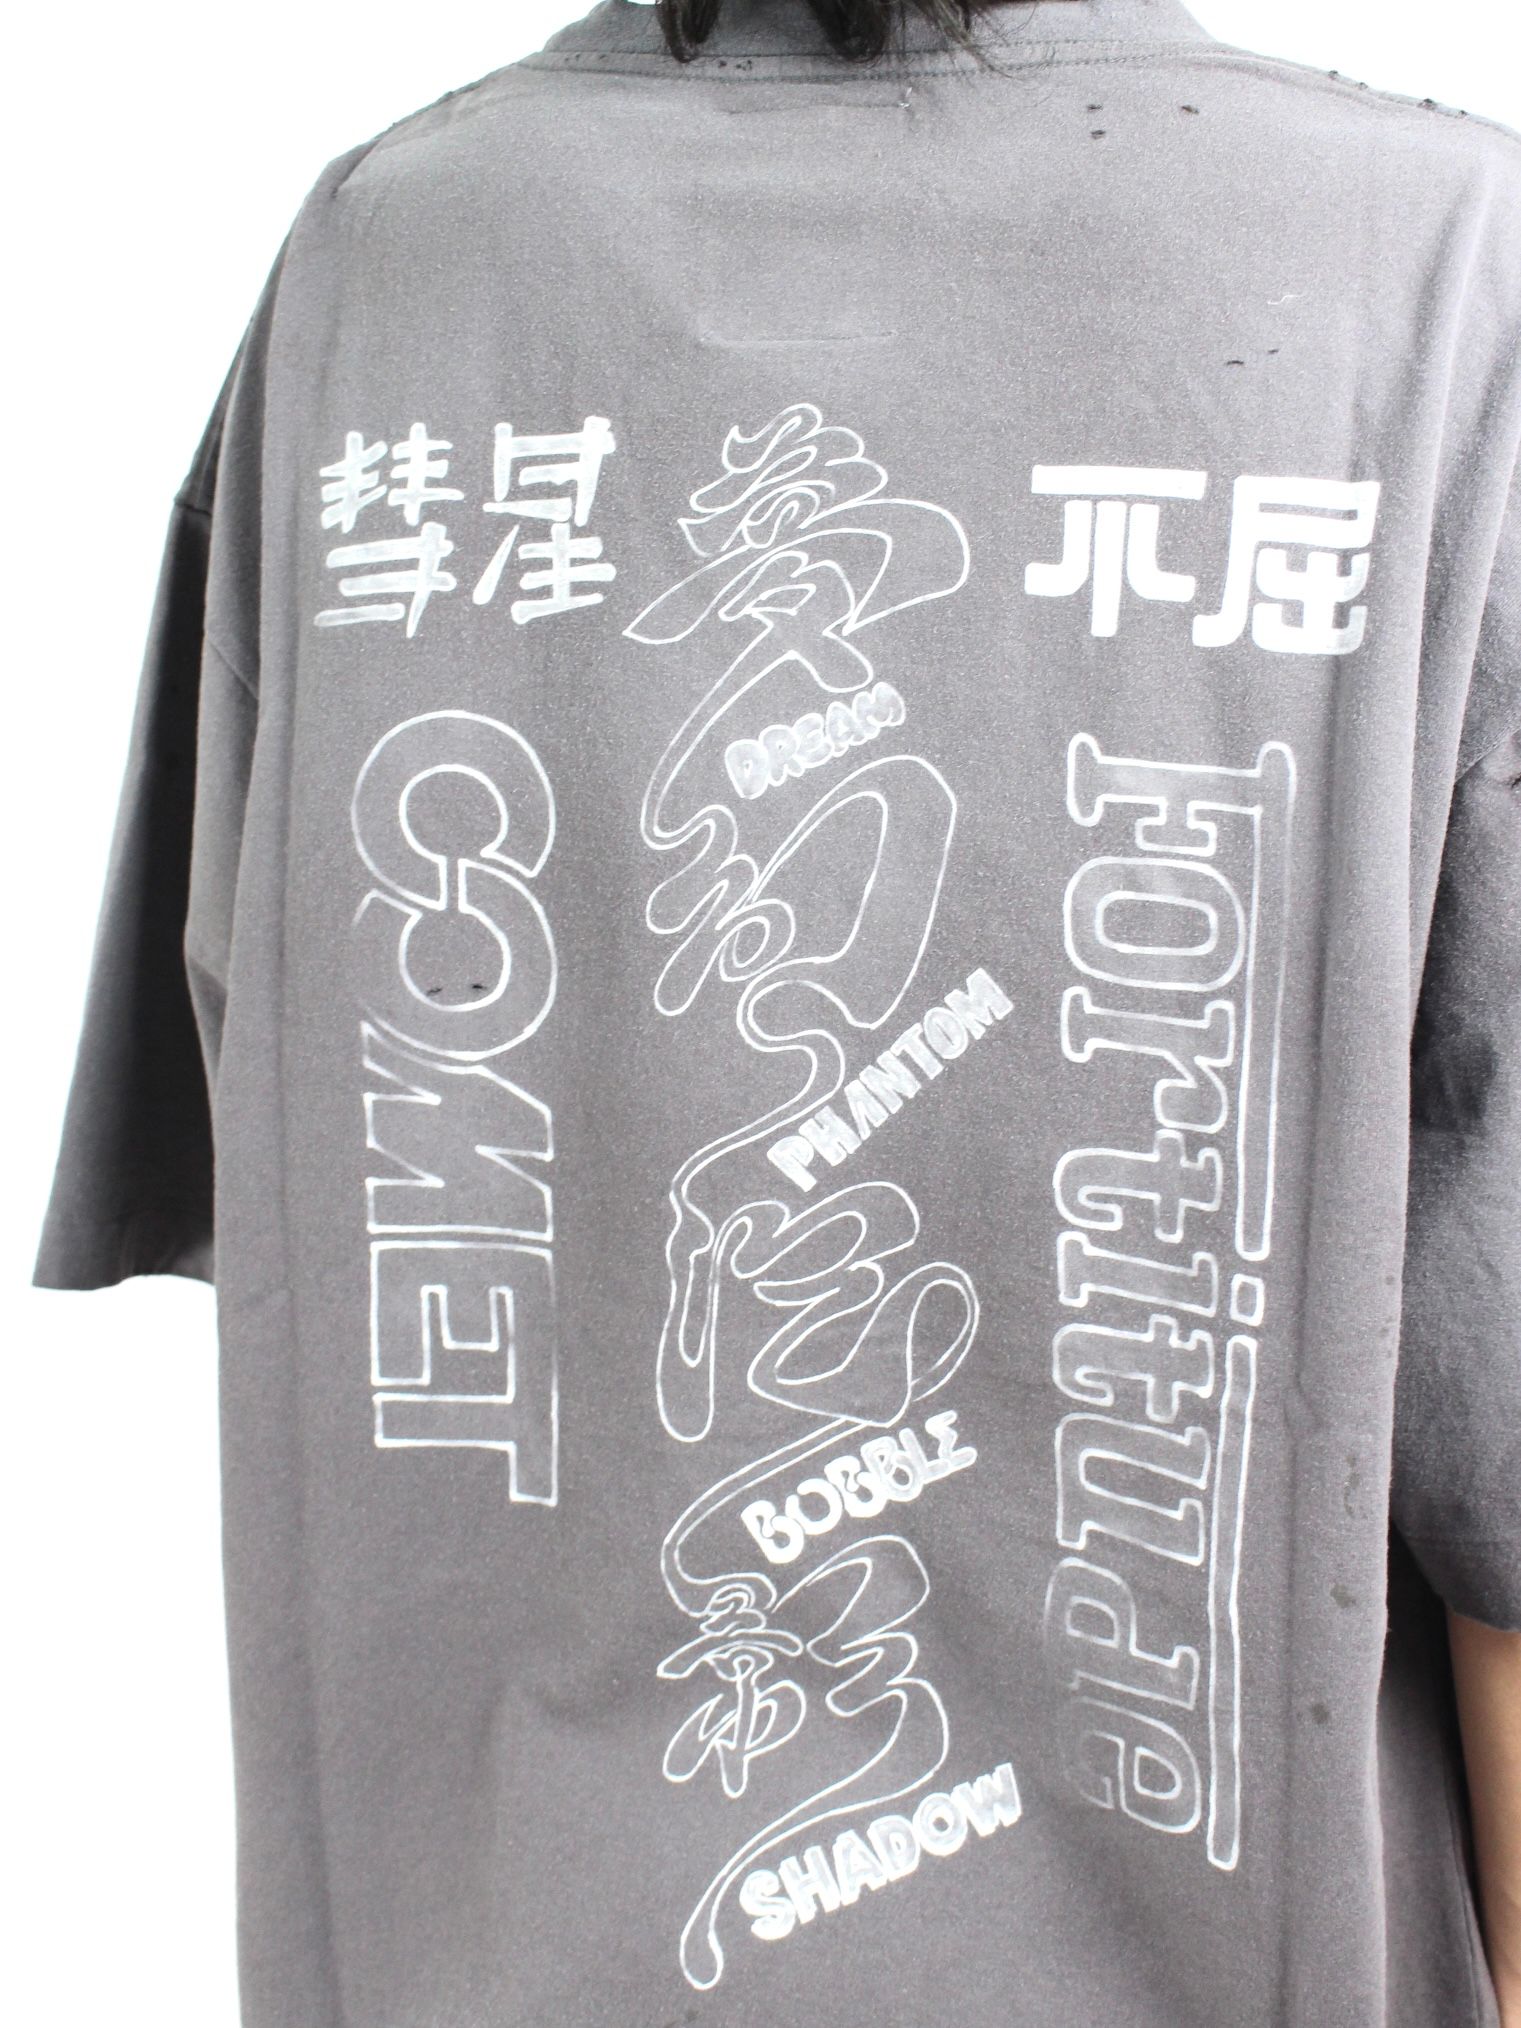 【22SS】ダメージ加工 ディストレスト Tシャツ / DISTRESSED TEE / ブラック - 44(XS) - ブラック